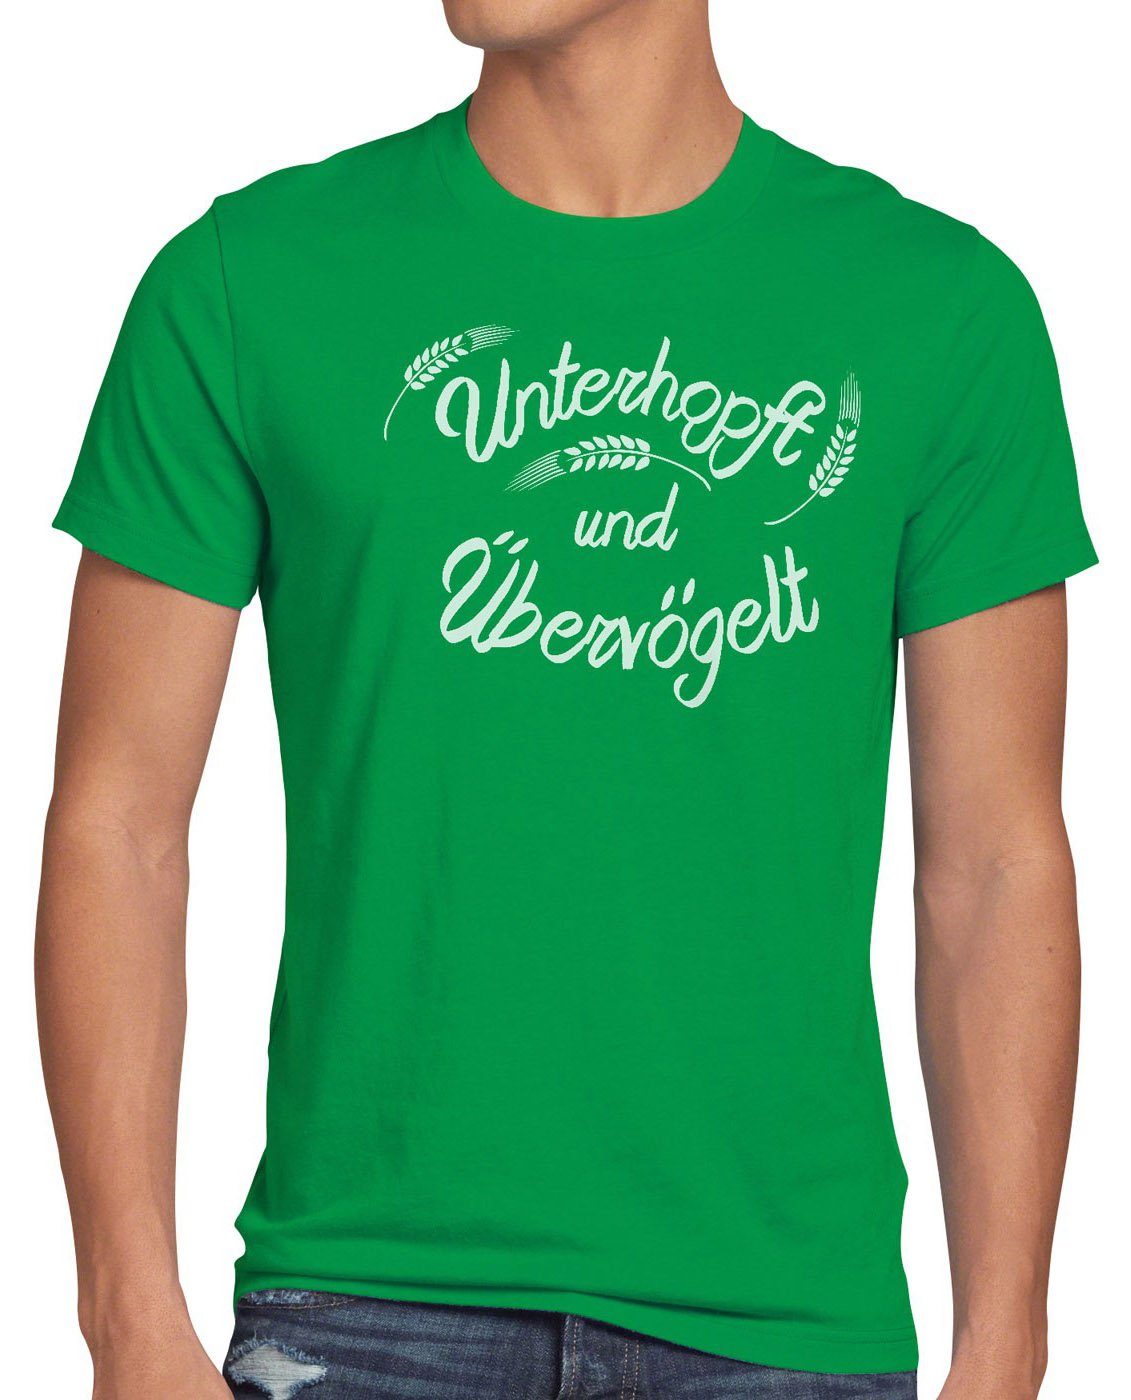 Unterhopft Funshirt T-Shirt Herren Übervögelt Spruch Malz style3 grün Print-Shirt Kult Fun Bier Shirt